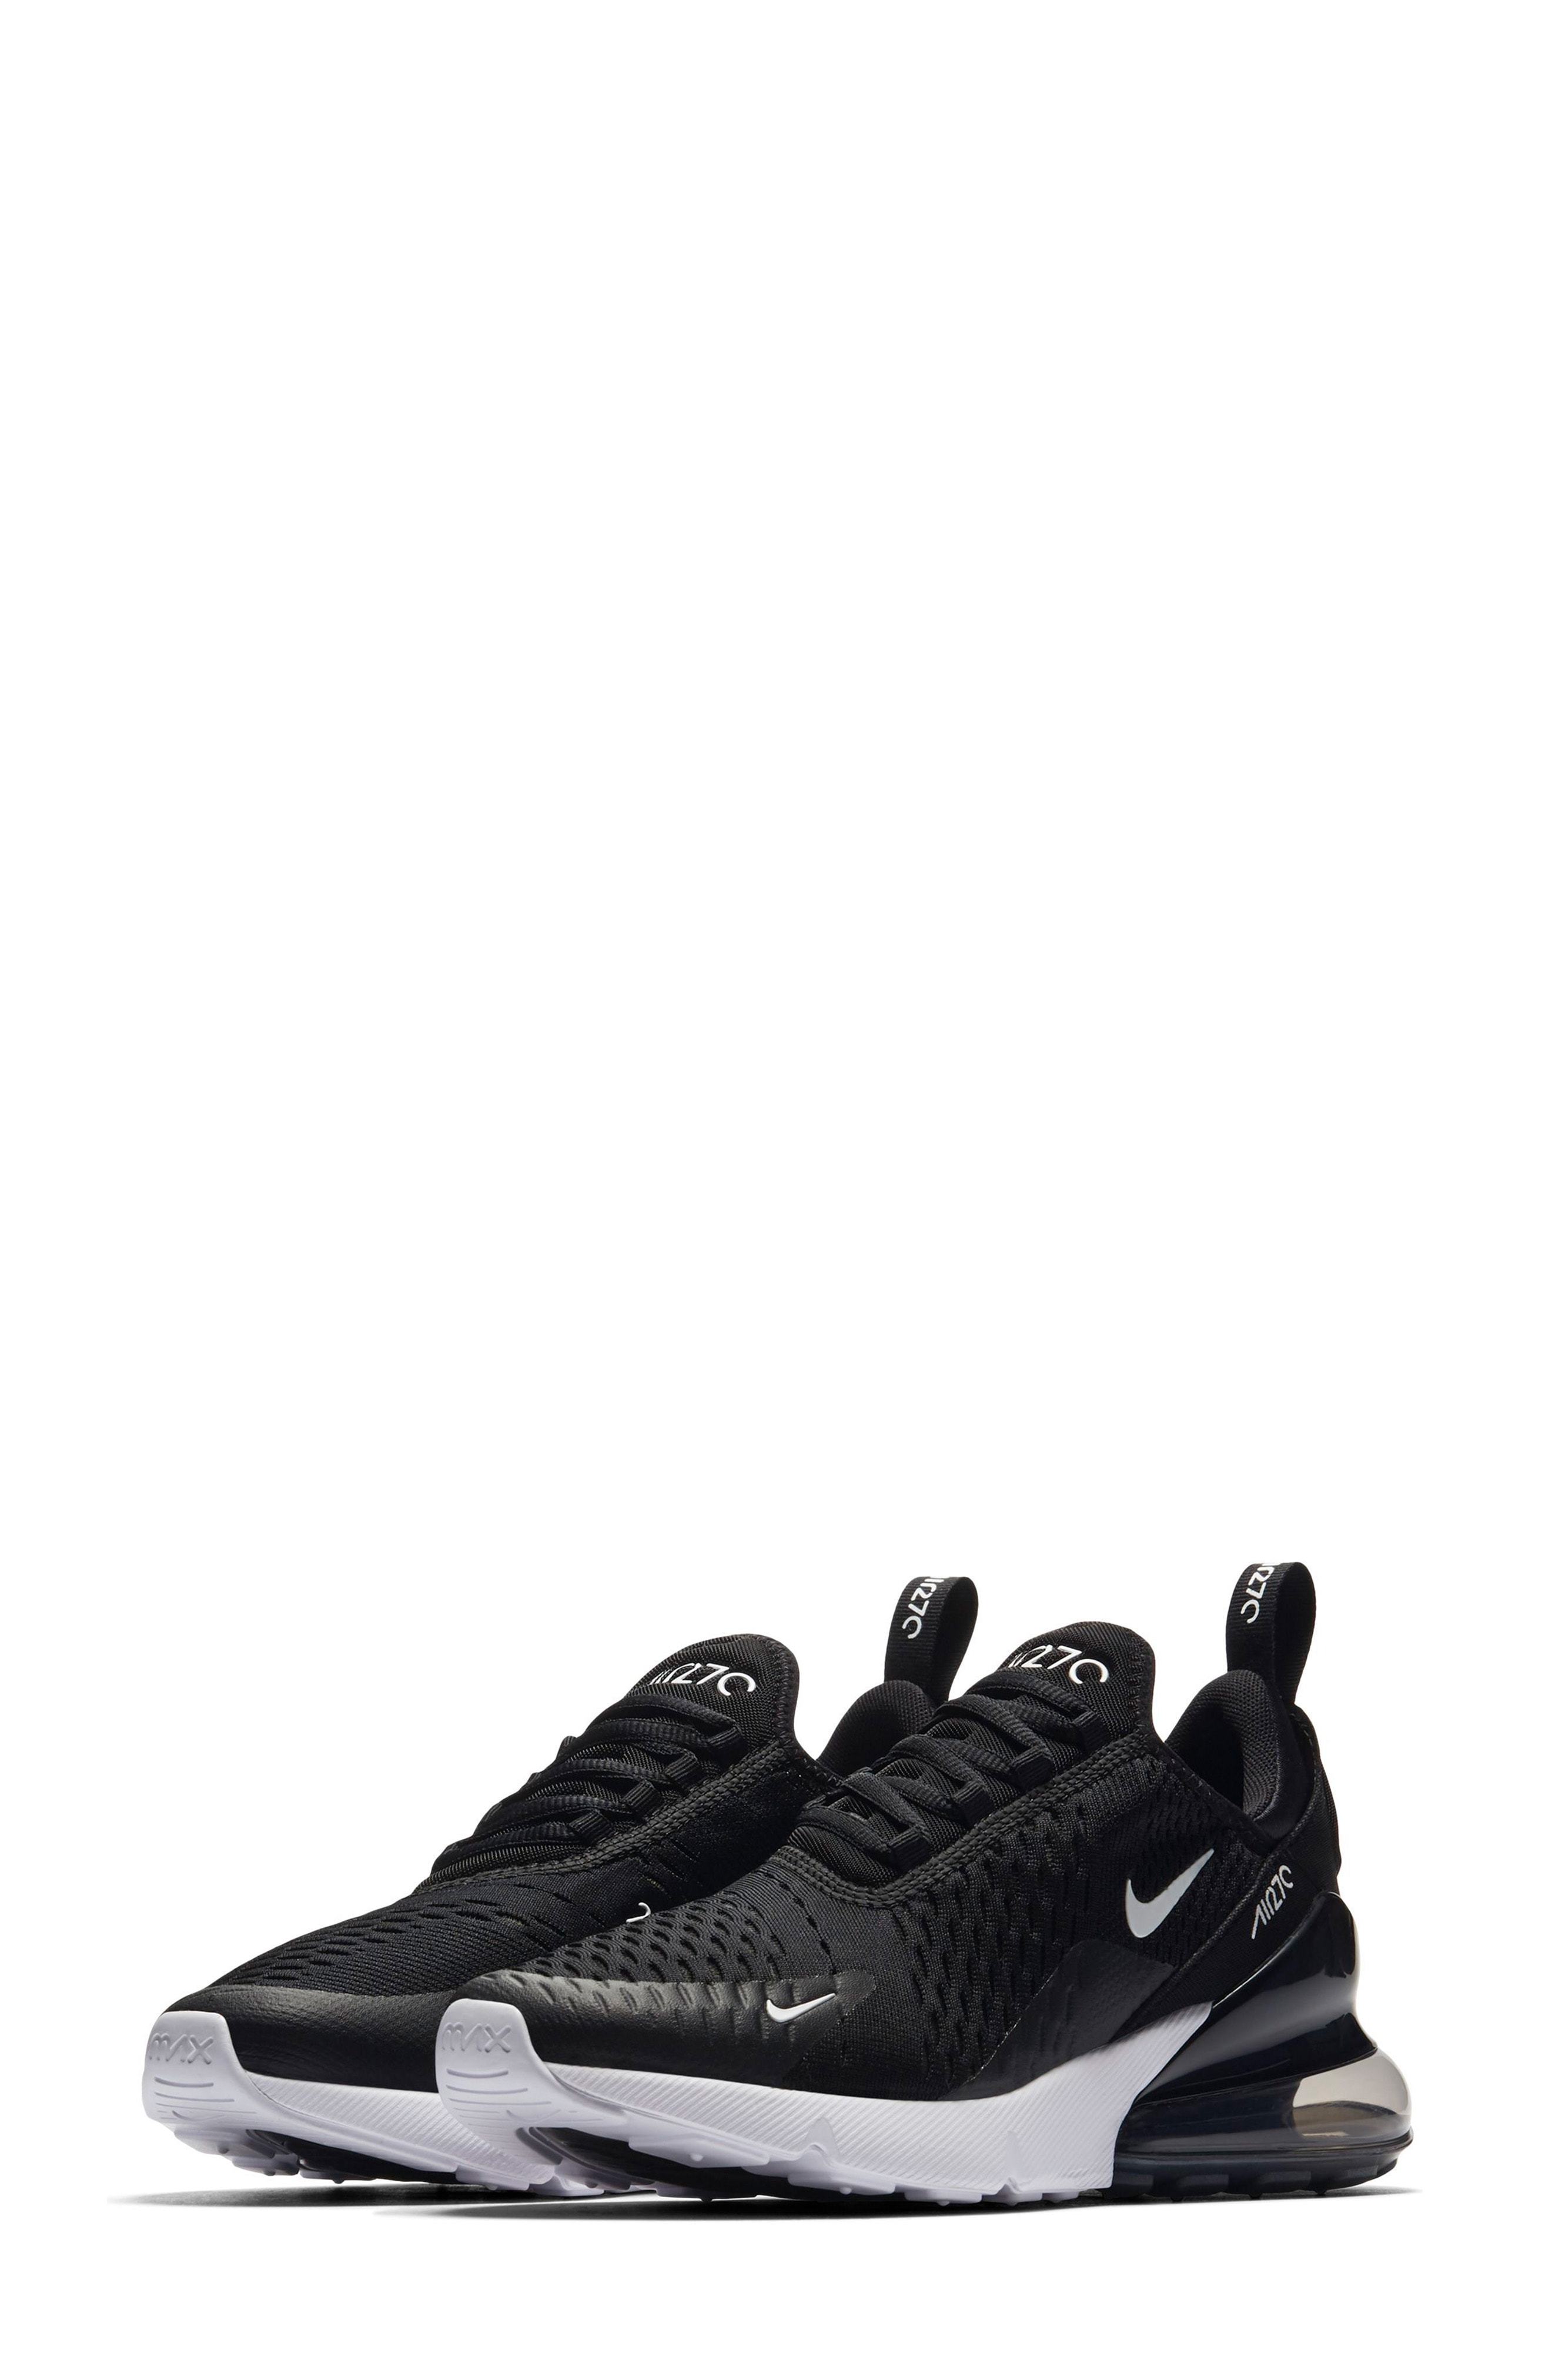 air max 270 premium sneaker black